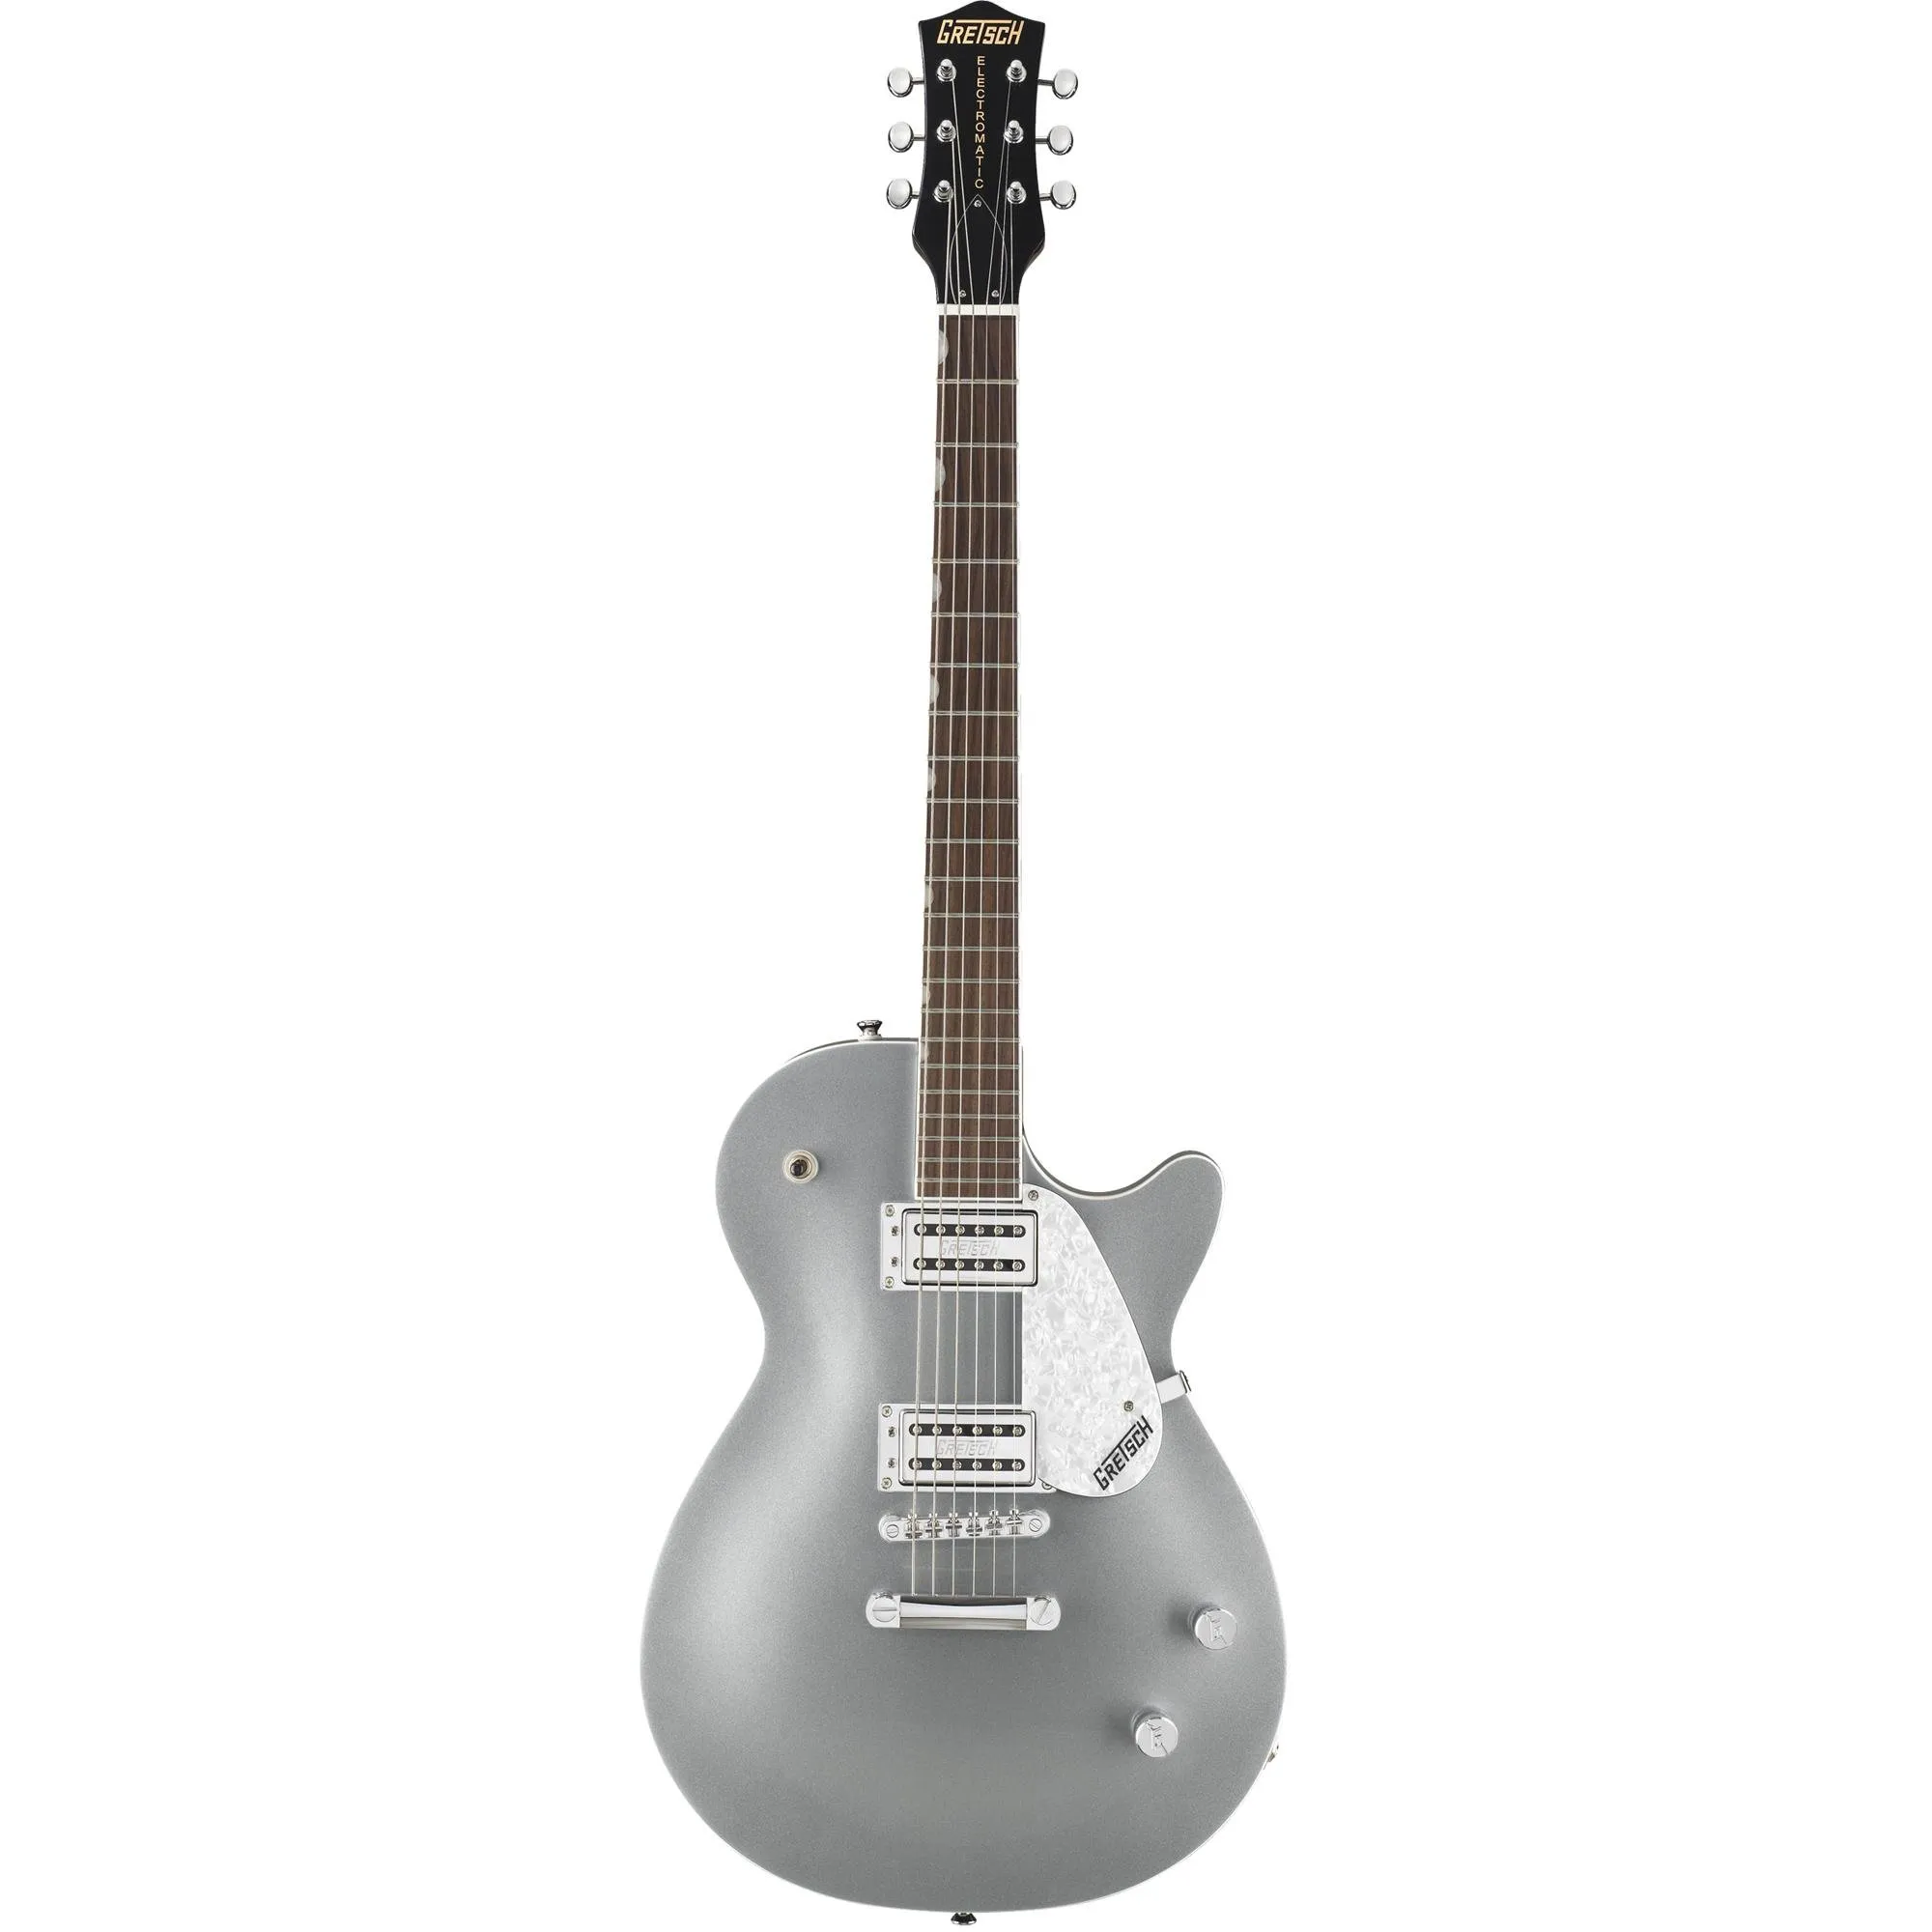 Guitarra Gretsch Electromatic G5425 Jet Club Prata por 4.699,99 à vista no boleto/pix ou parcele em até 12x sem juros. Compre na loja Mundomax!